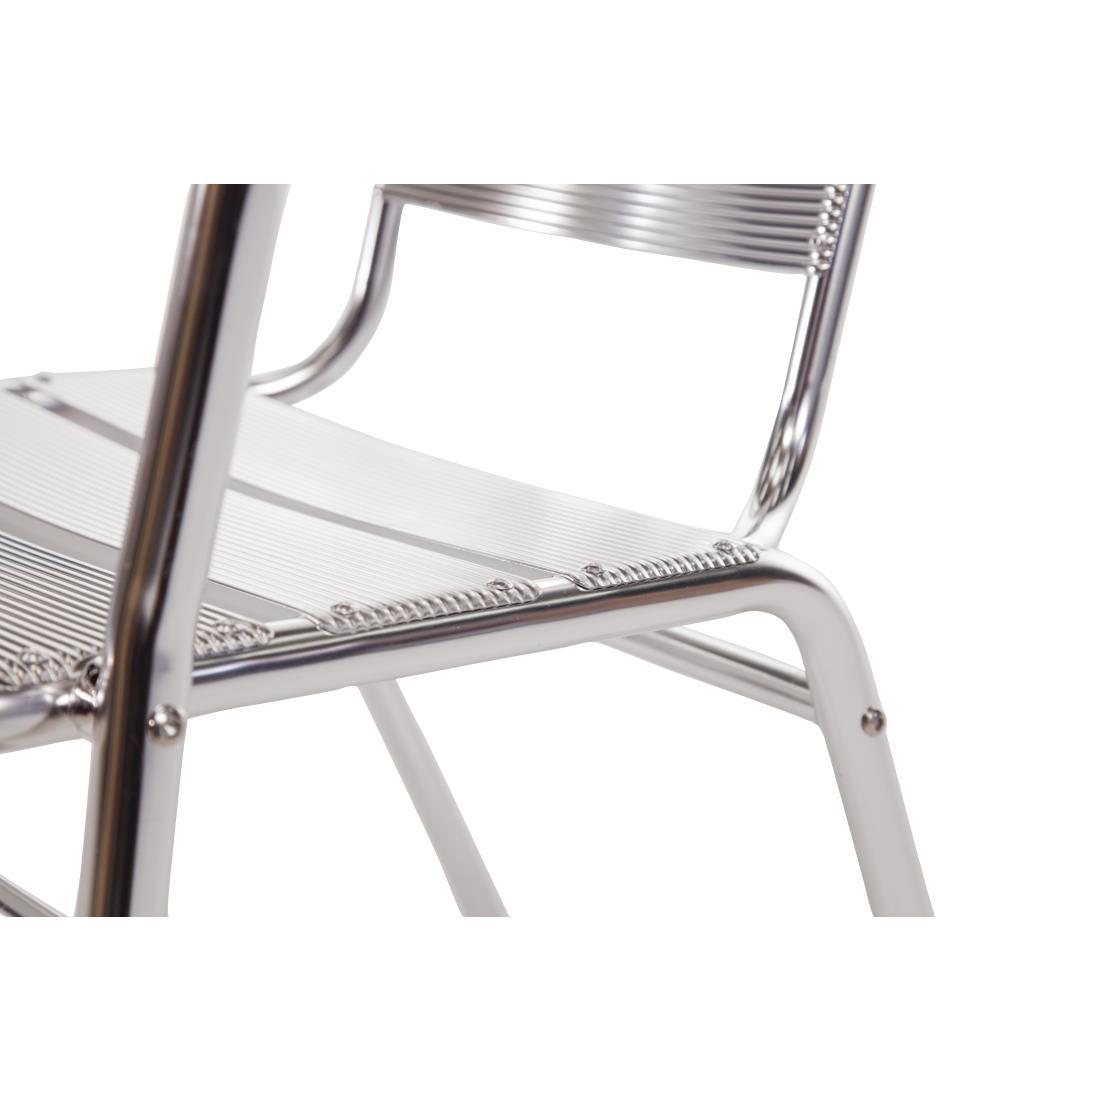 Bolero Aluminium Stacking Chairs (Pack of 4) - U419  - 3